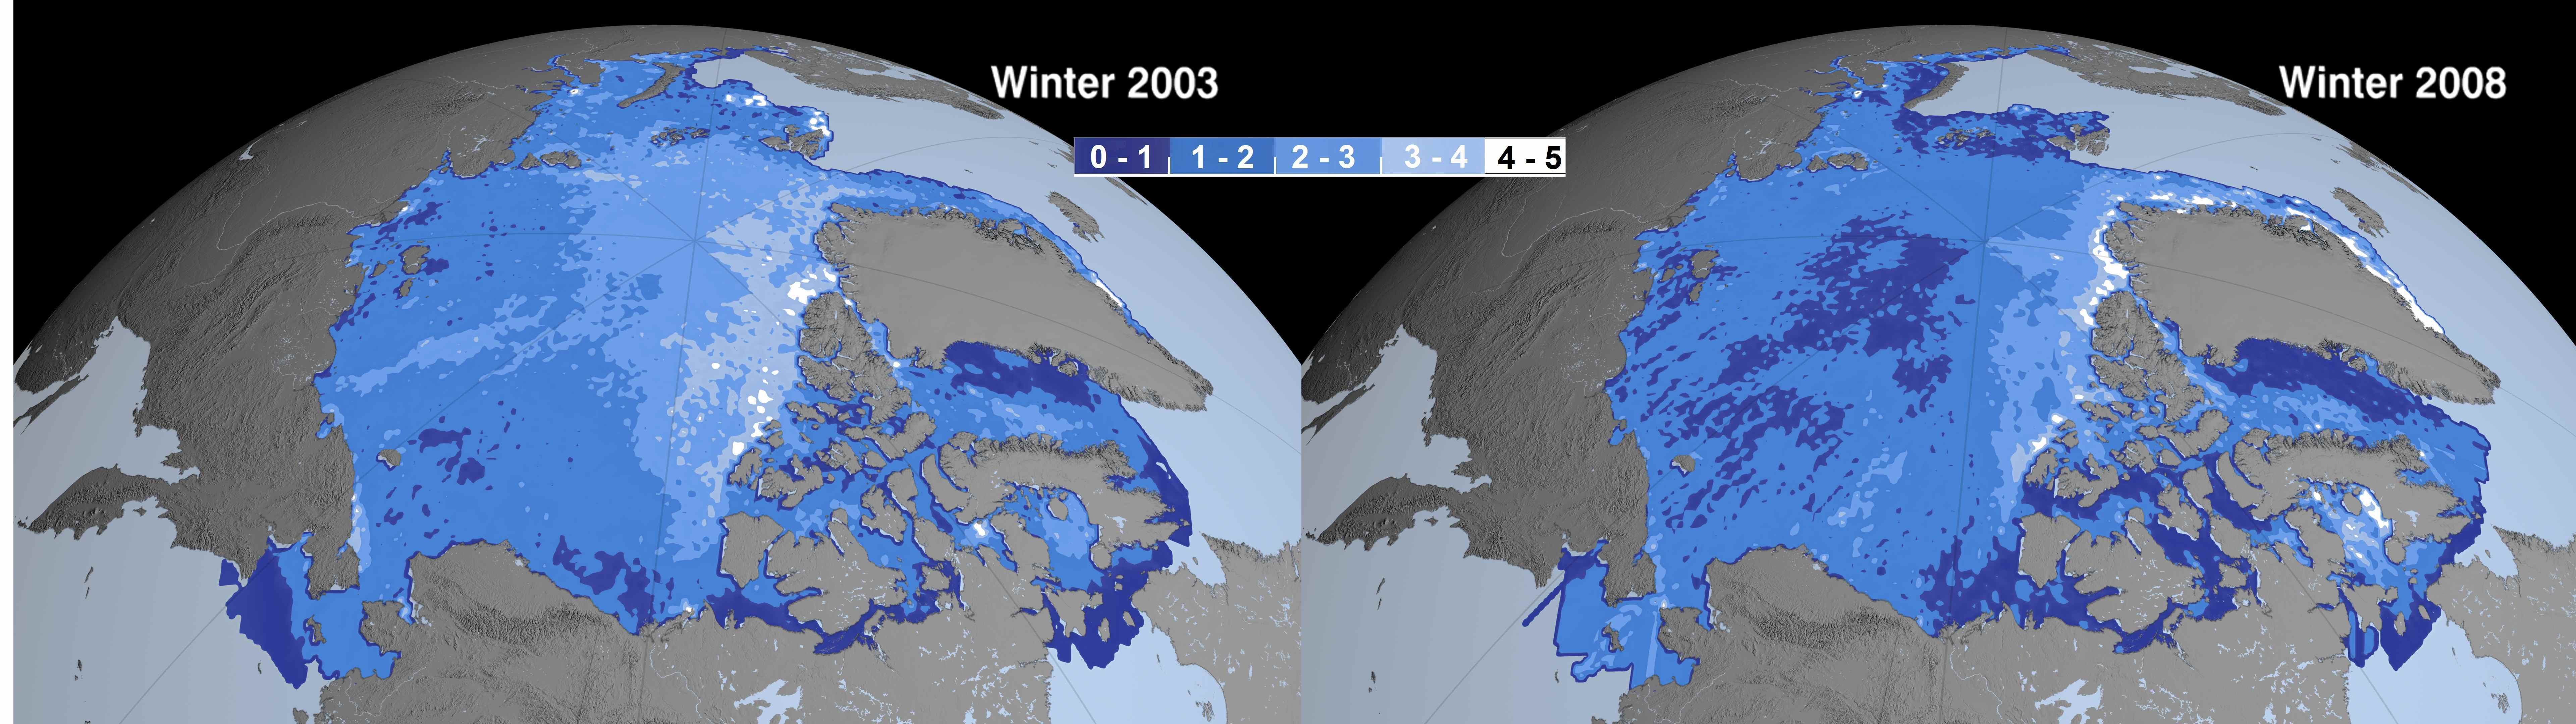 Comparaison des épaisseurs de la banquise en hiver, en 2003 et en 2008. La couleur indique l'épaisseur, de bleu foncé pour 0 à 1 mètre jusqu'à blanc, pour plus de 4 mètres. On voit clairement apparaître en 2008 des zones de moins d'un mètre au centre de la banquise arctique.
© Nasa/JPL (montage Futura-Sciences)